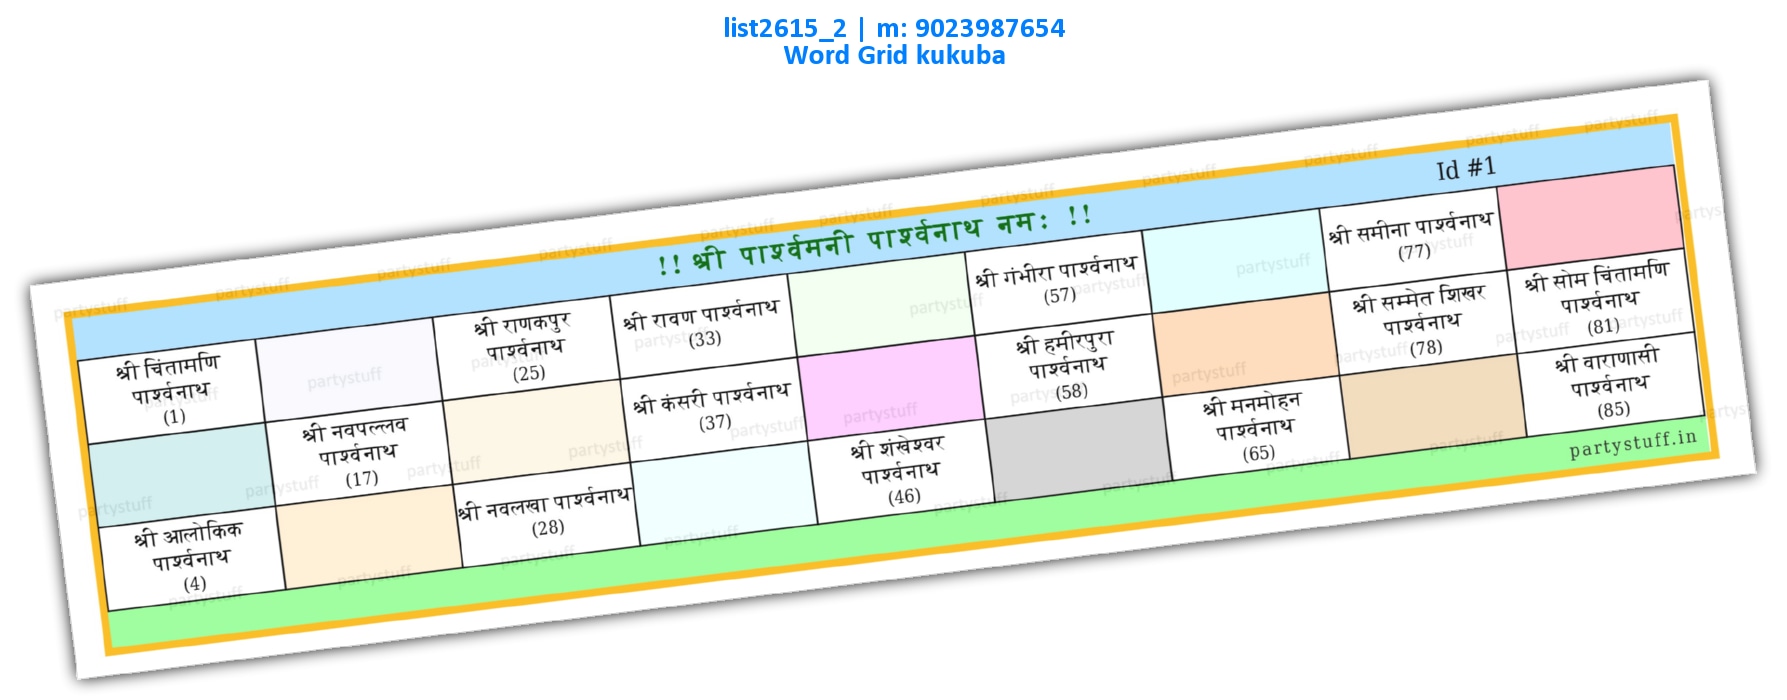 Parshavnath Jain Names Hindi list2615_2 PDF Tambola Housie